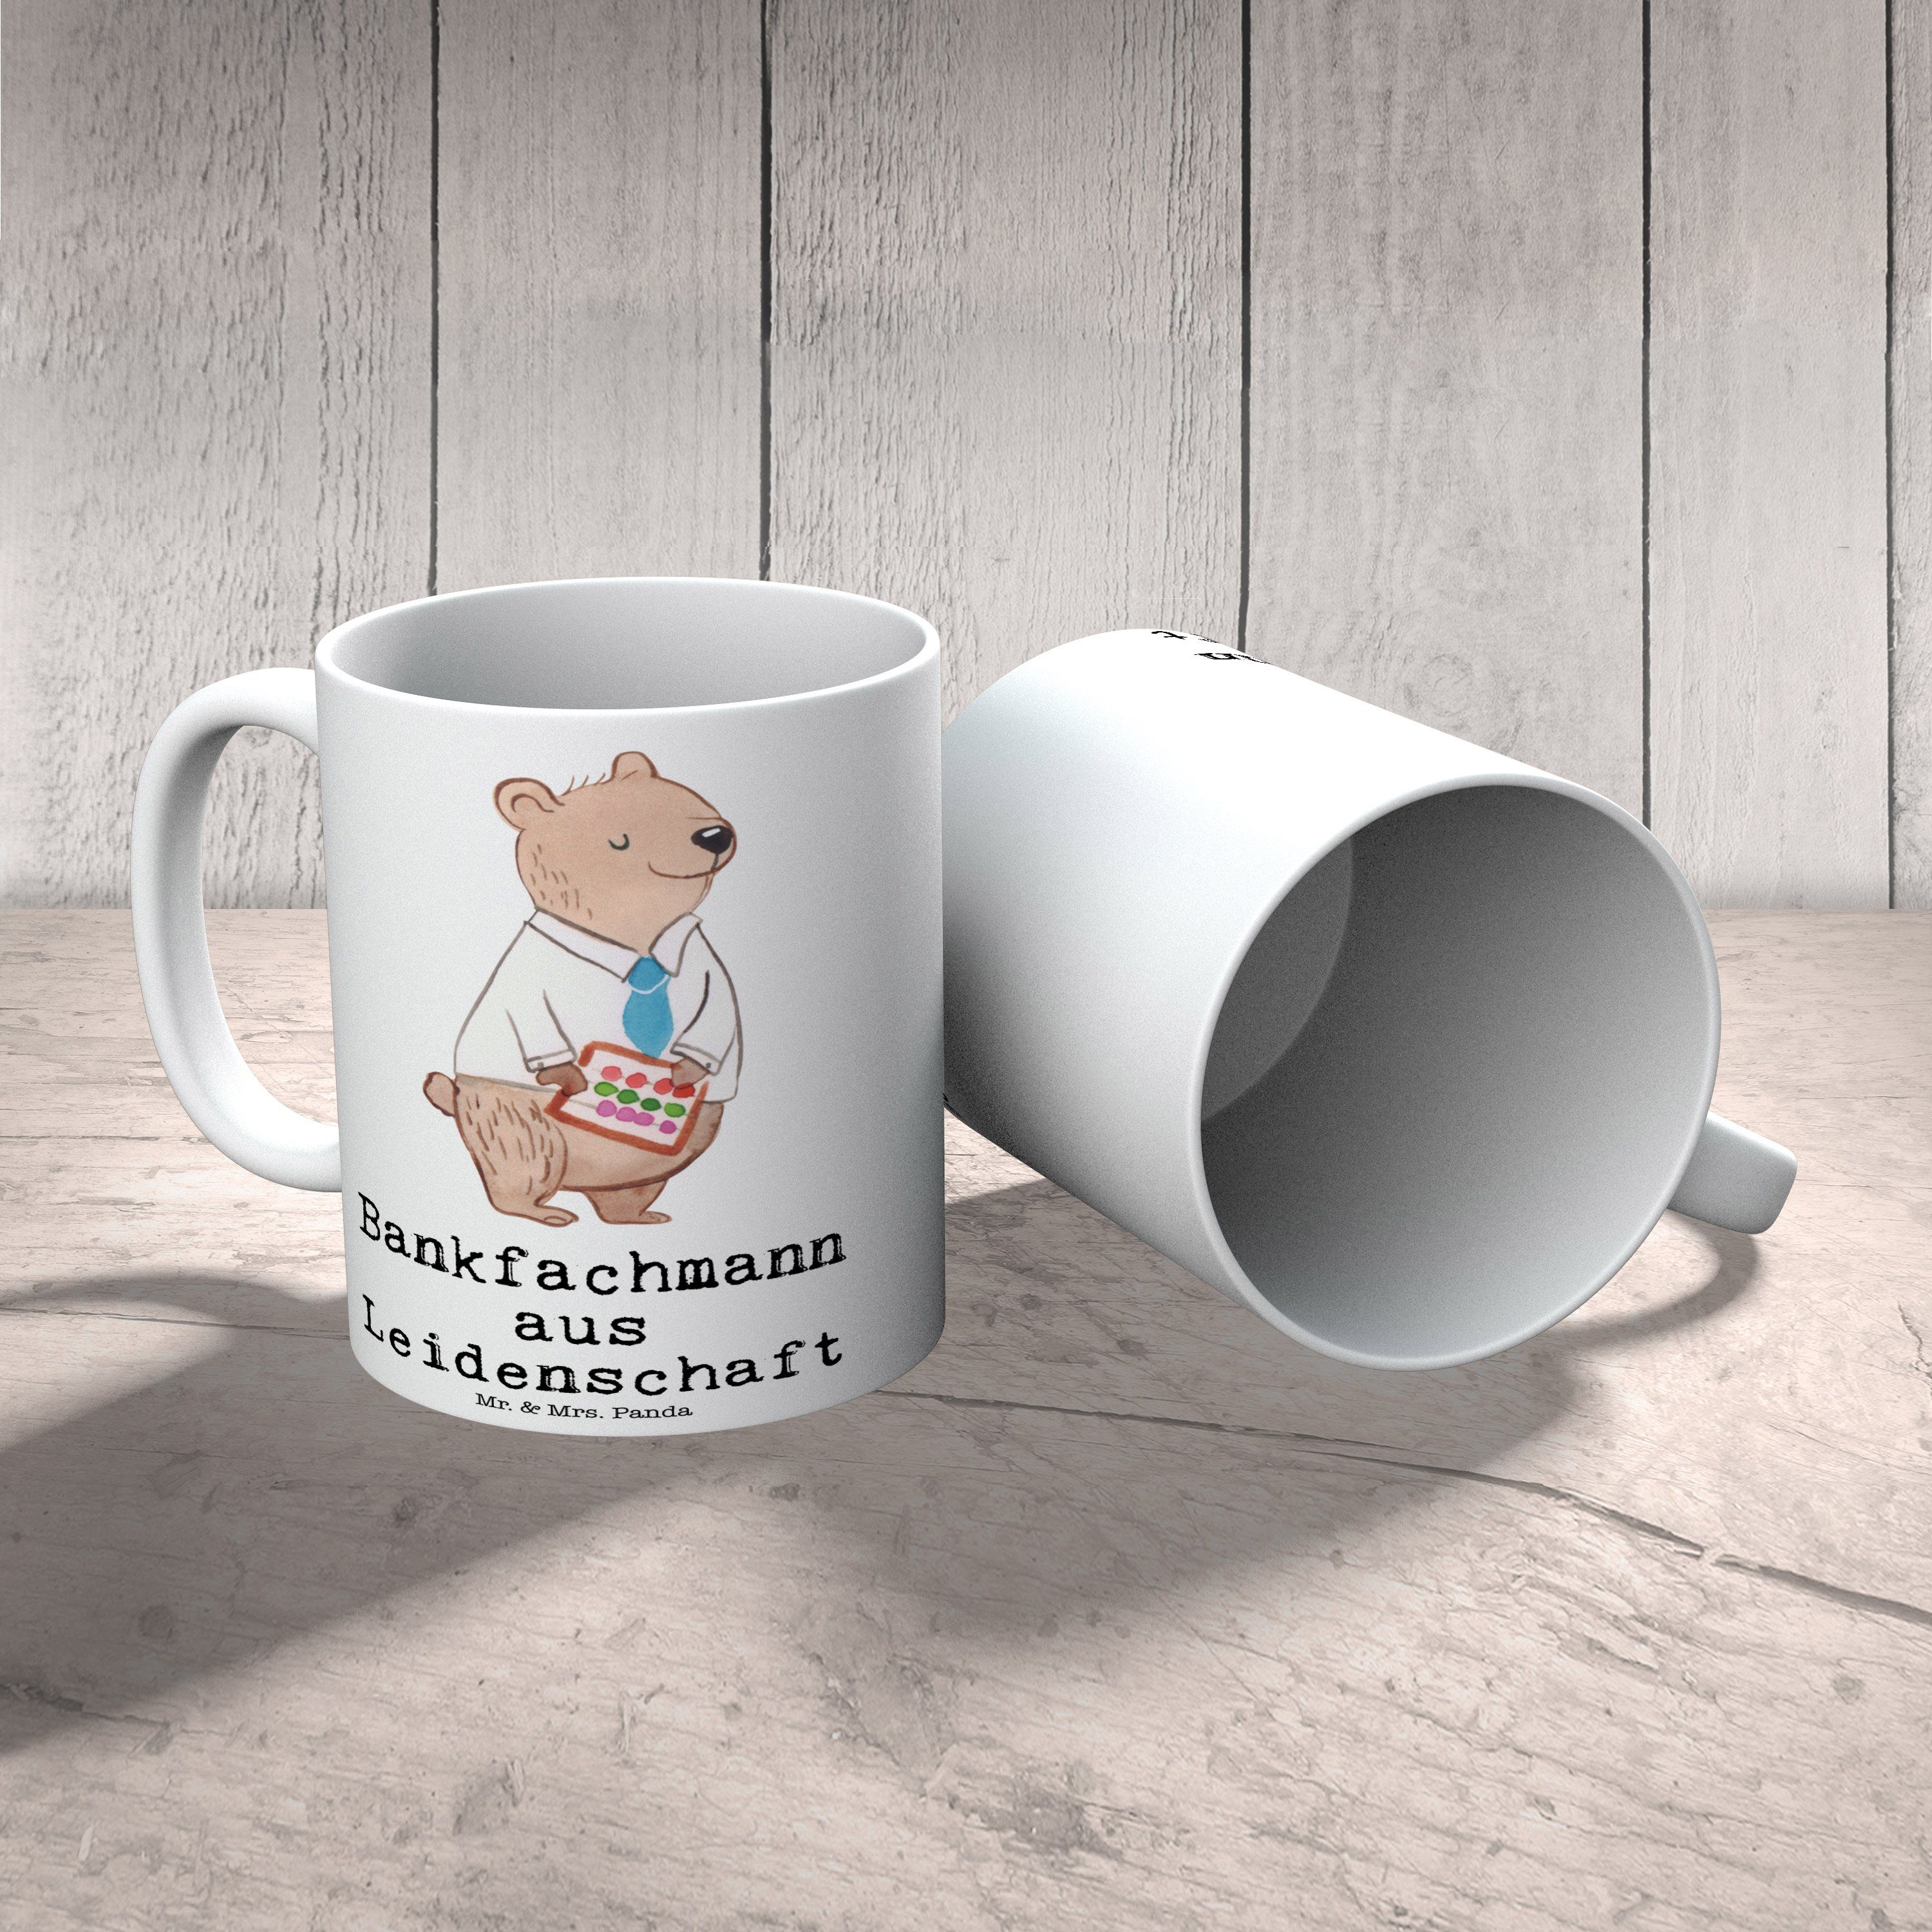 Geschenk, S, aus Weiß Tasse Kaffeetasse, - Bankfachmann Leidenschaft Keramik Tasse Panda Mr. & - Mrs.